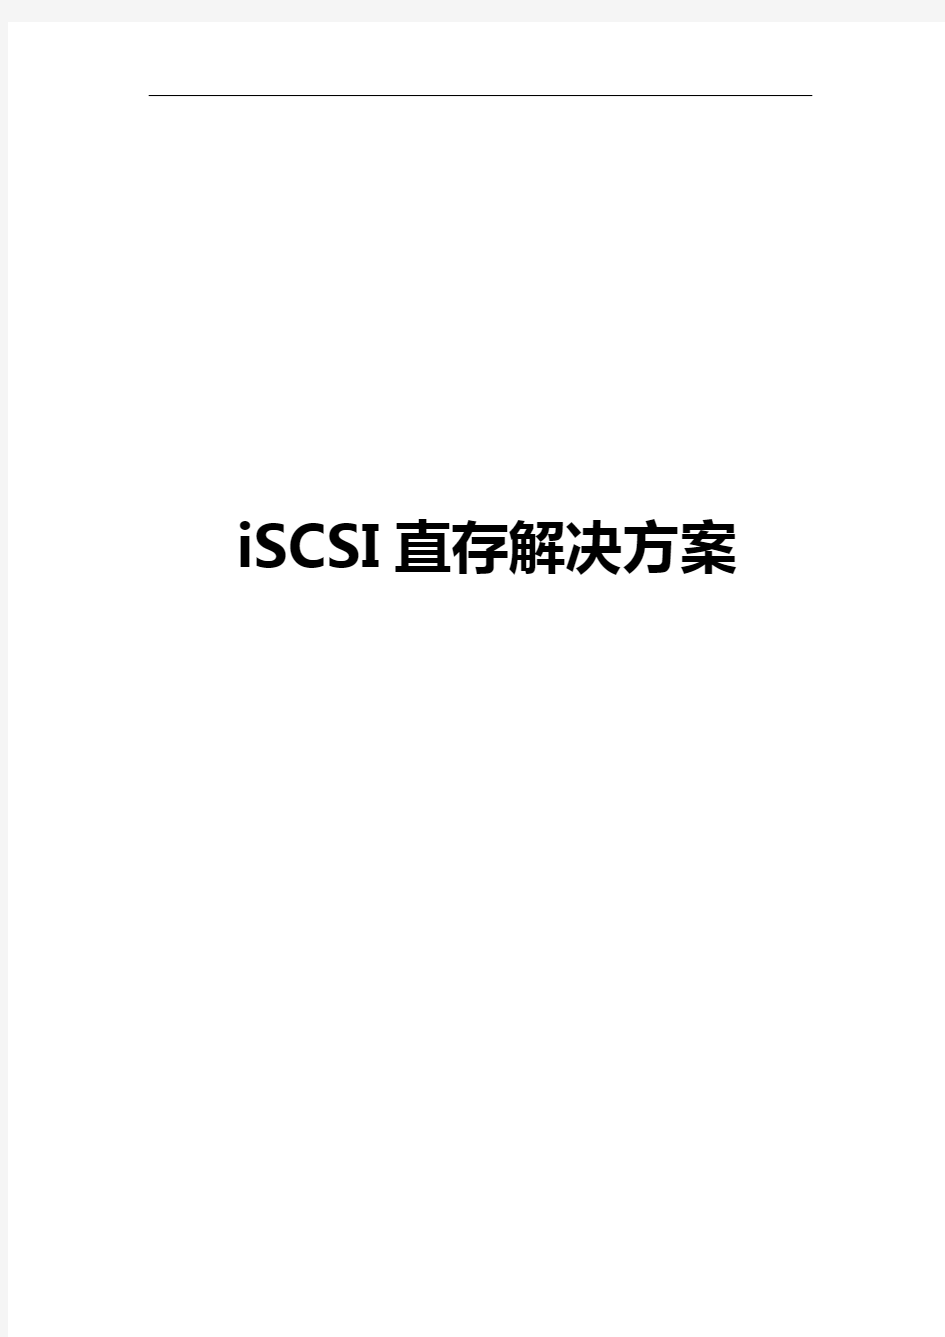 大华iSCSI直存解决方案